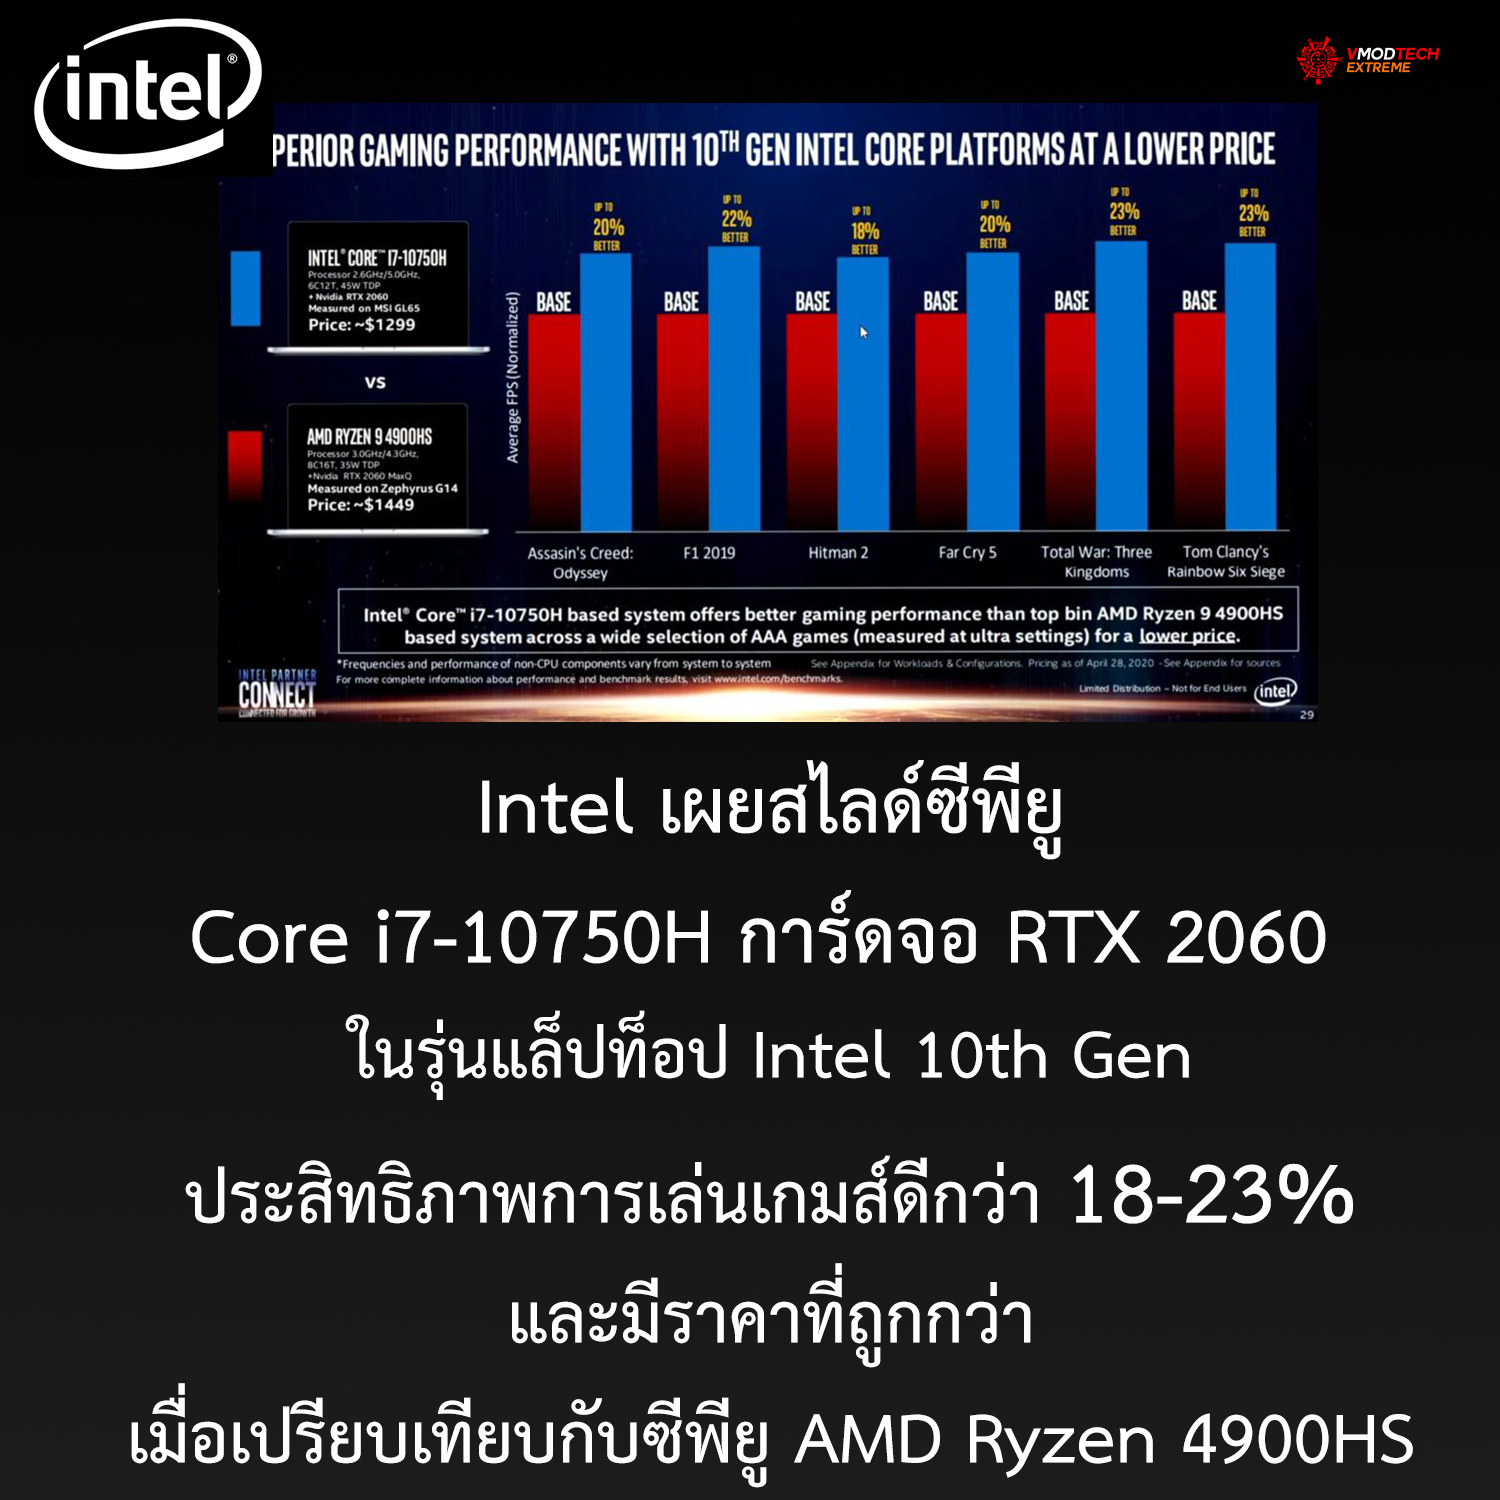 intel core i7 10750 superior gaming performance over amd Intel เผยสไลด์ผลทดสอบซีพีู Core i7 10750H ในรุ่นแล็ปท็อปประสิทธิภาพการเล่นเกมส์ดีกว่าซีพียู AMD Ryzen 4900HS และราคาถูกกว่าในการ์ดจอรุ่นเดียวกัน 